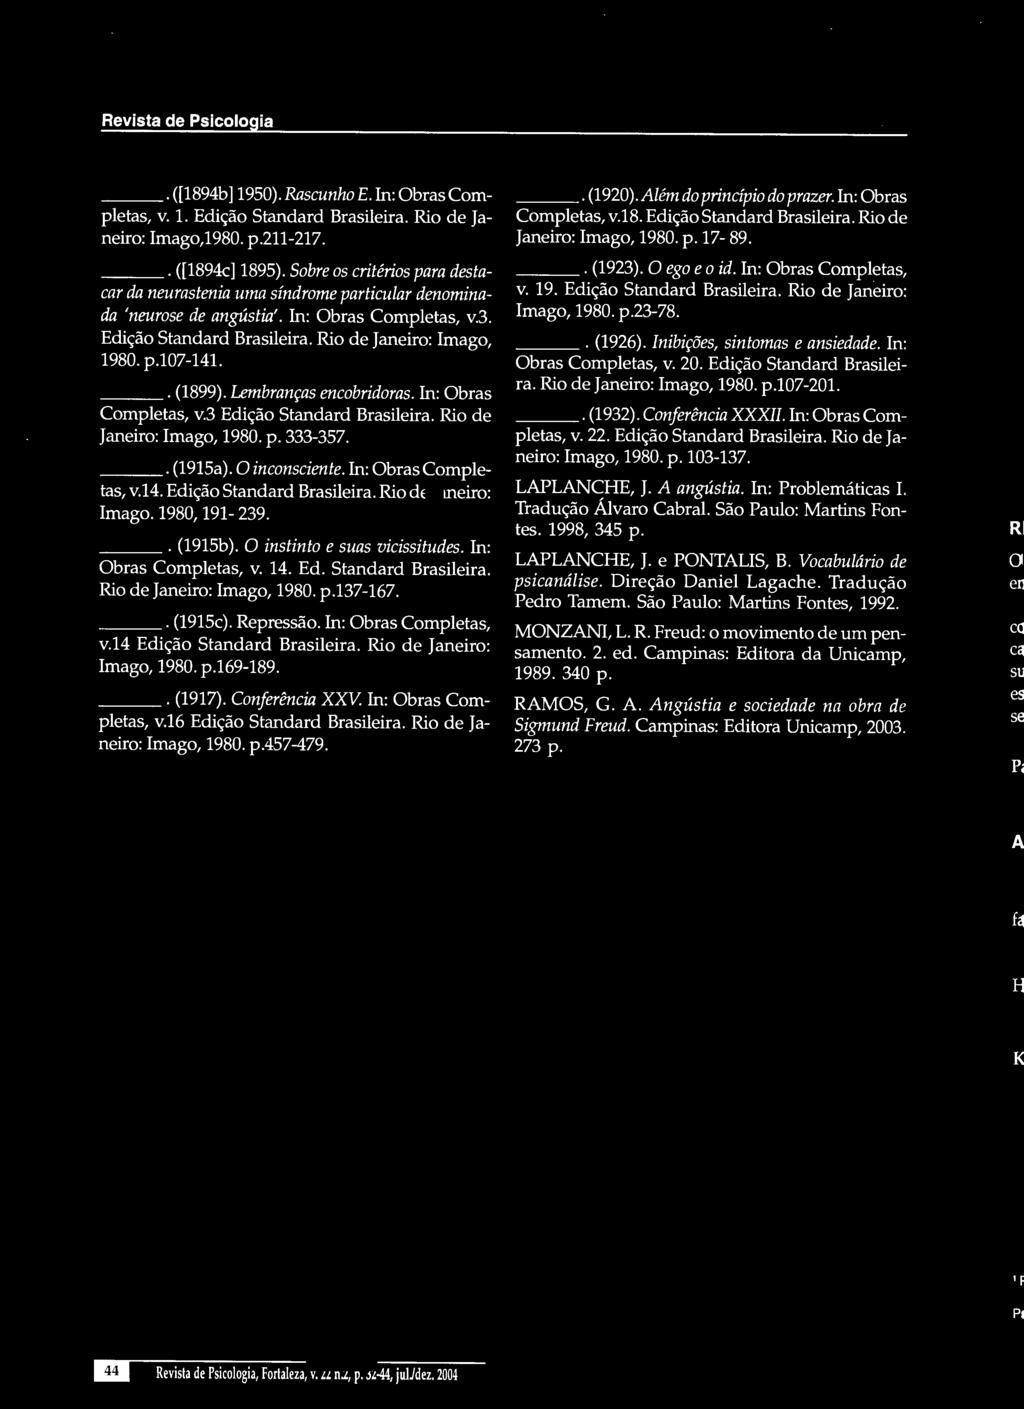 . (1899). Lembranças encobridoras. In: Obras Completas, v.3 Edição Standard Brasileira. Rio de Janeiro: Imago, 1980. p. 333-357.. (1915a). O inconsciente. In: Obras Completas, v.l4.